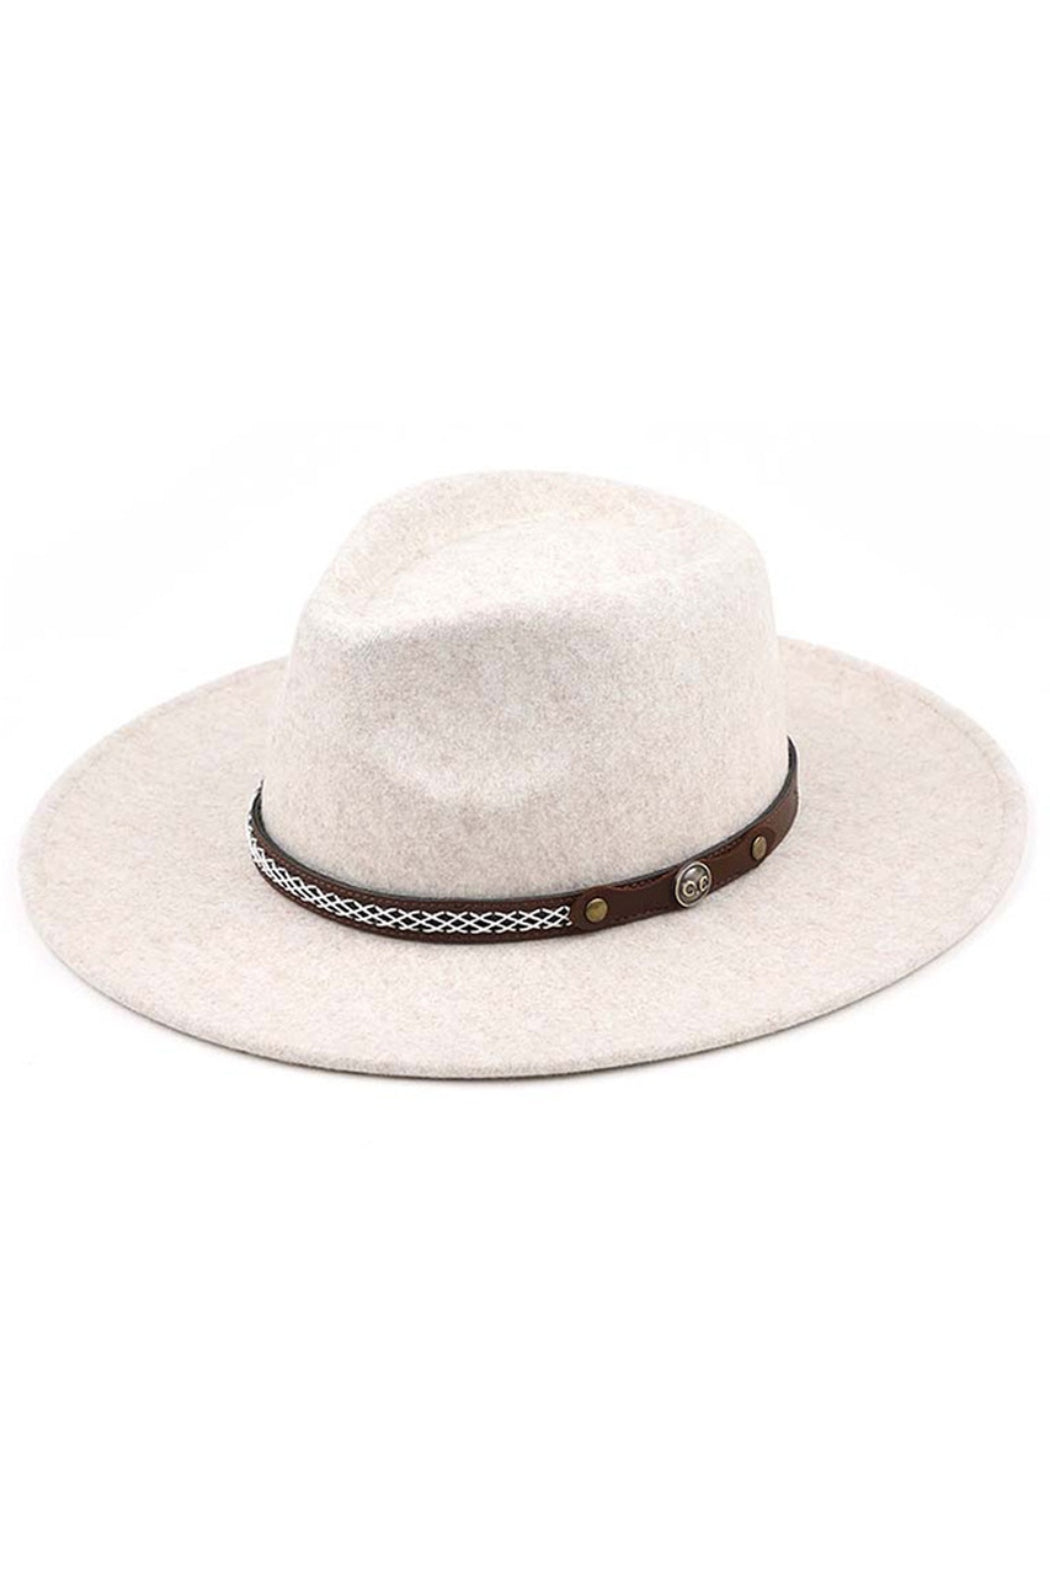 C.C Panama Wide Brim Felt Hat